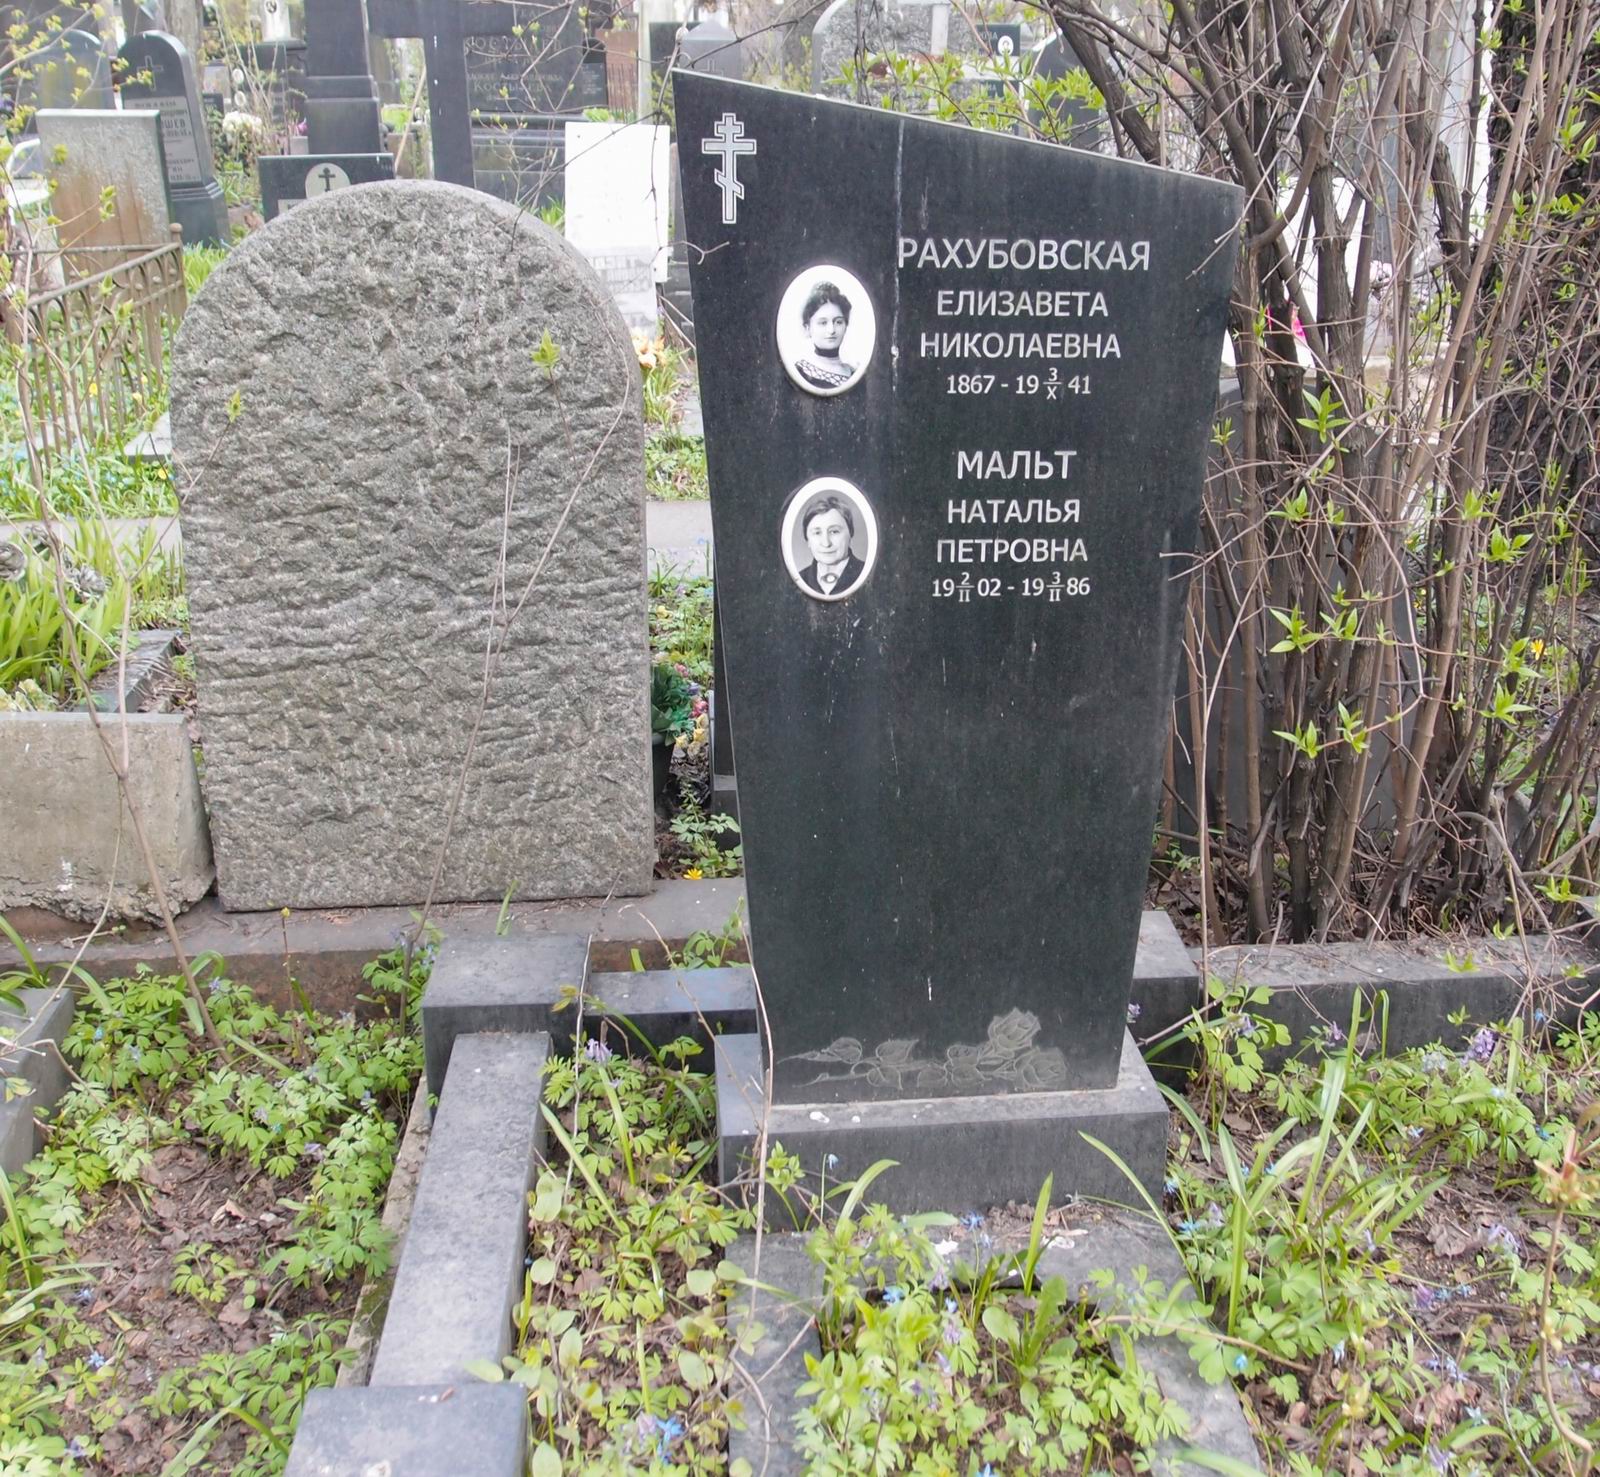 Памятник на могиле Рахубовской Е.Н. (1876–1941), на Новодевичьем кладбище (2–28–15).